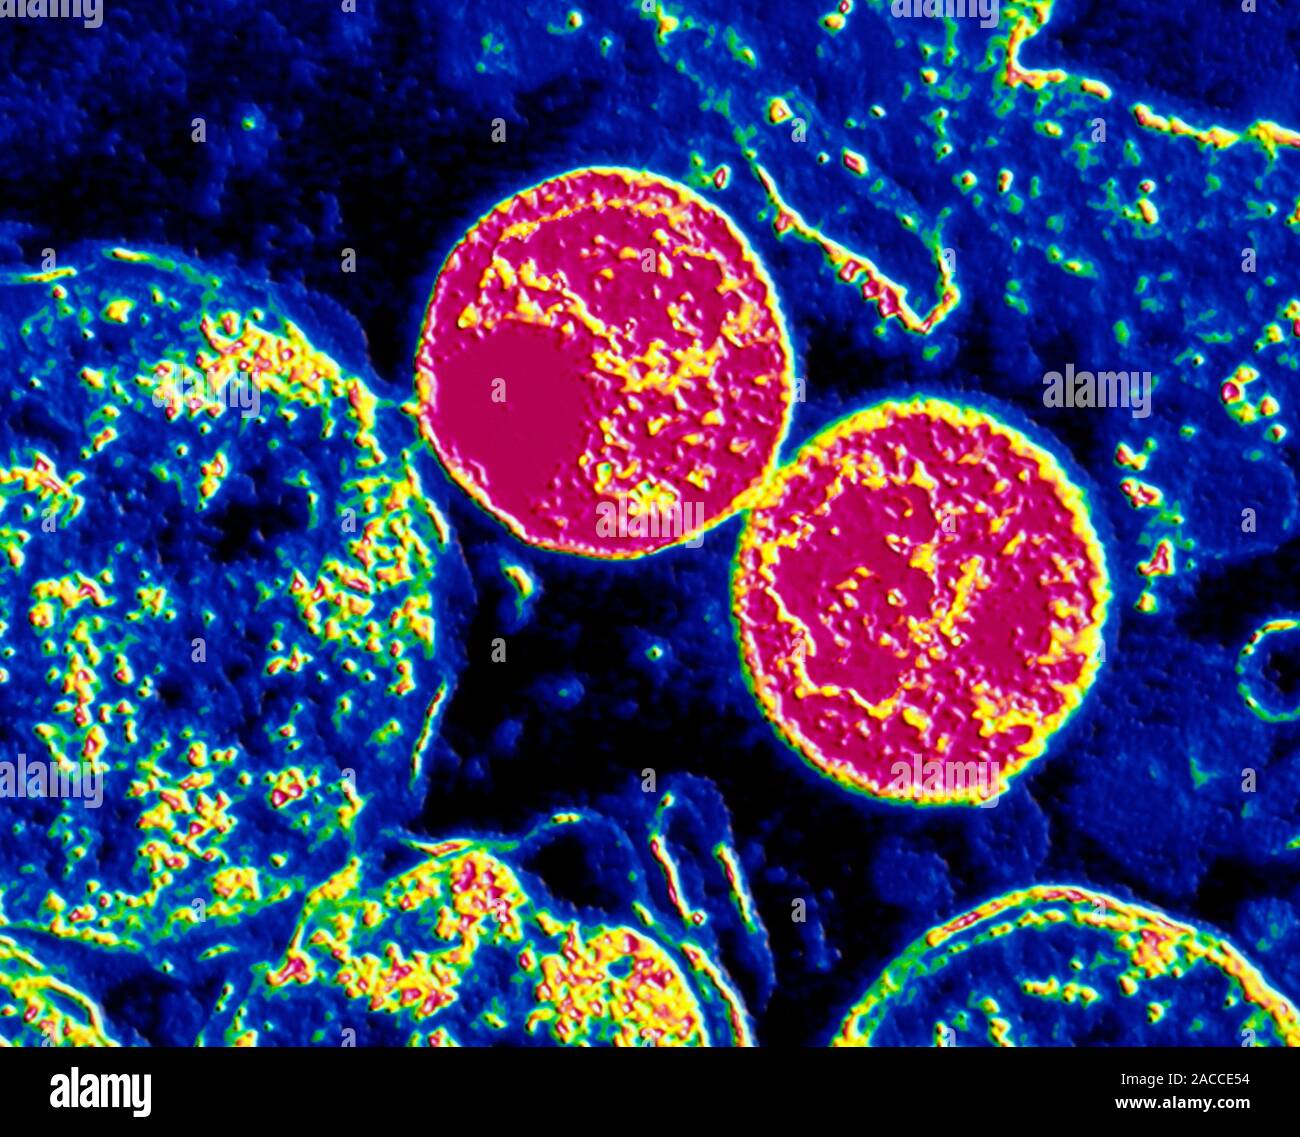 Хламидиоз 2. Бактерия хламидия трахоматис. Хламидия трахоматис микроскопия. Хламидия трахоматис под микроскопом.